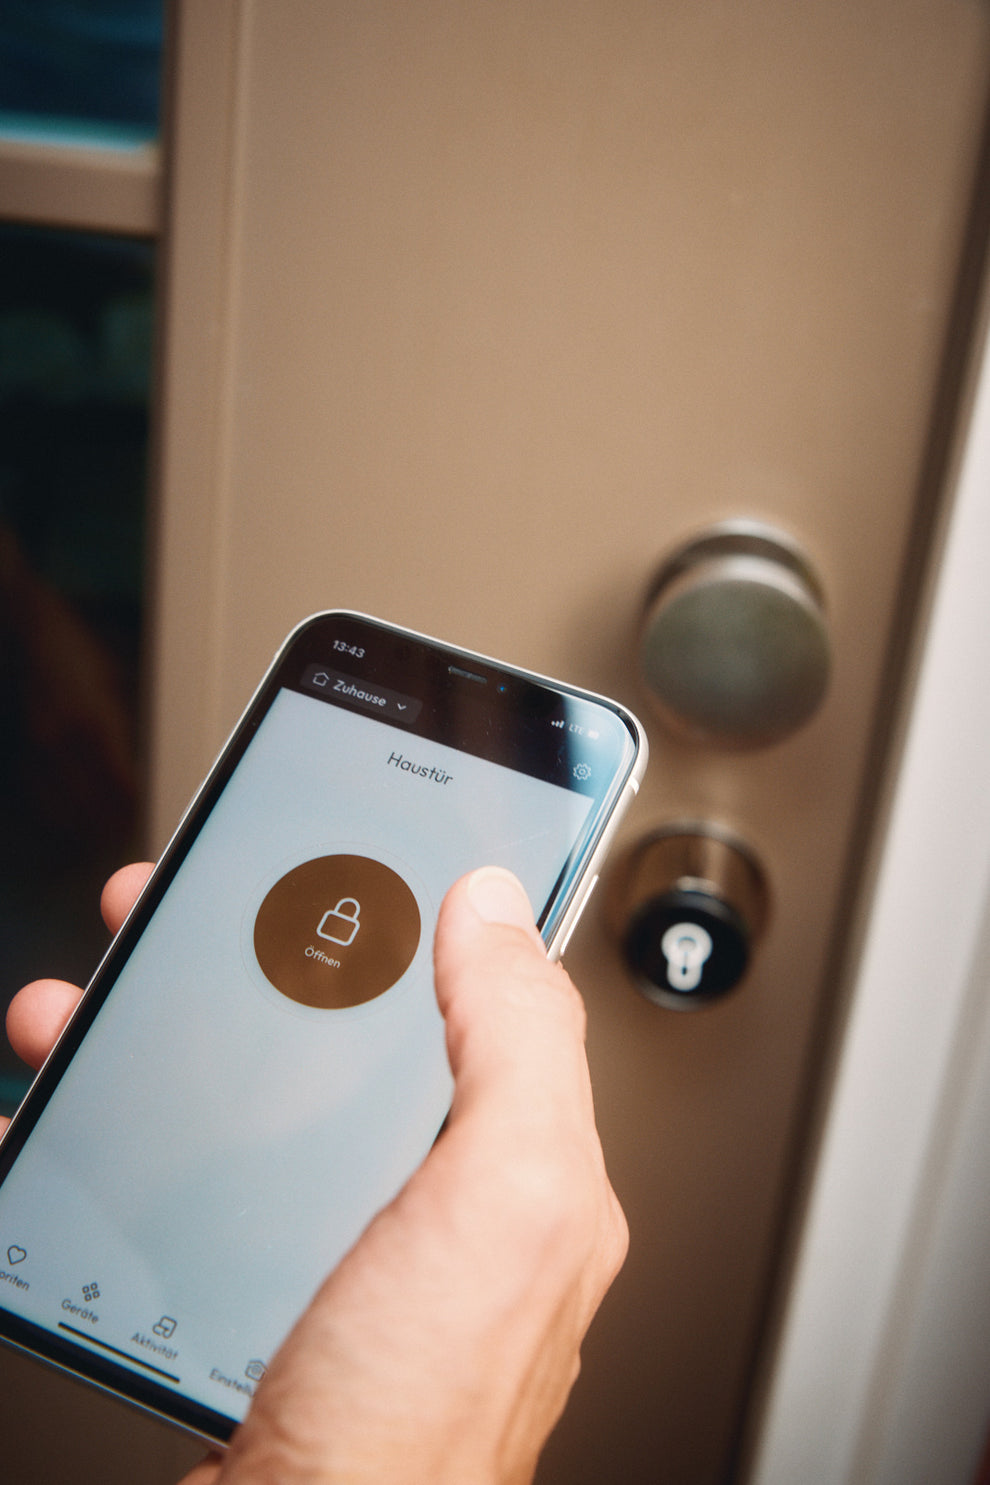 Ein Handy mit geöffneter keyota App wird vor einer Tür mit installiertem keyota Smart Lock gehalten, bereit, die Tür mit der App zu öffnen